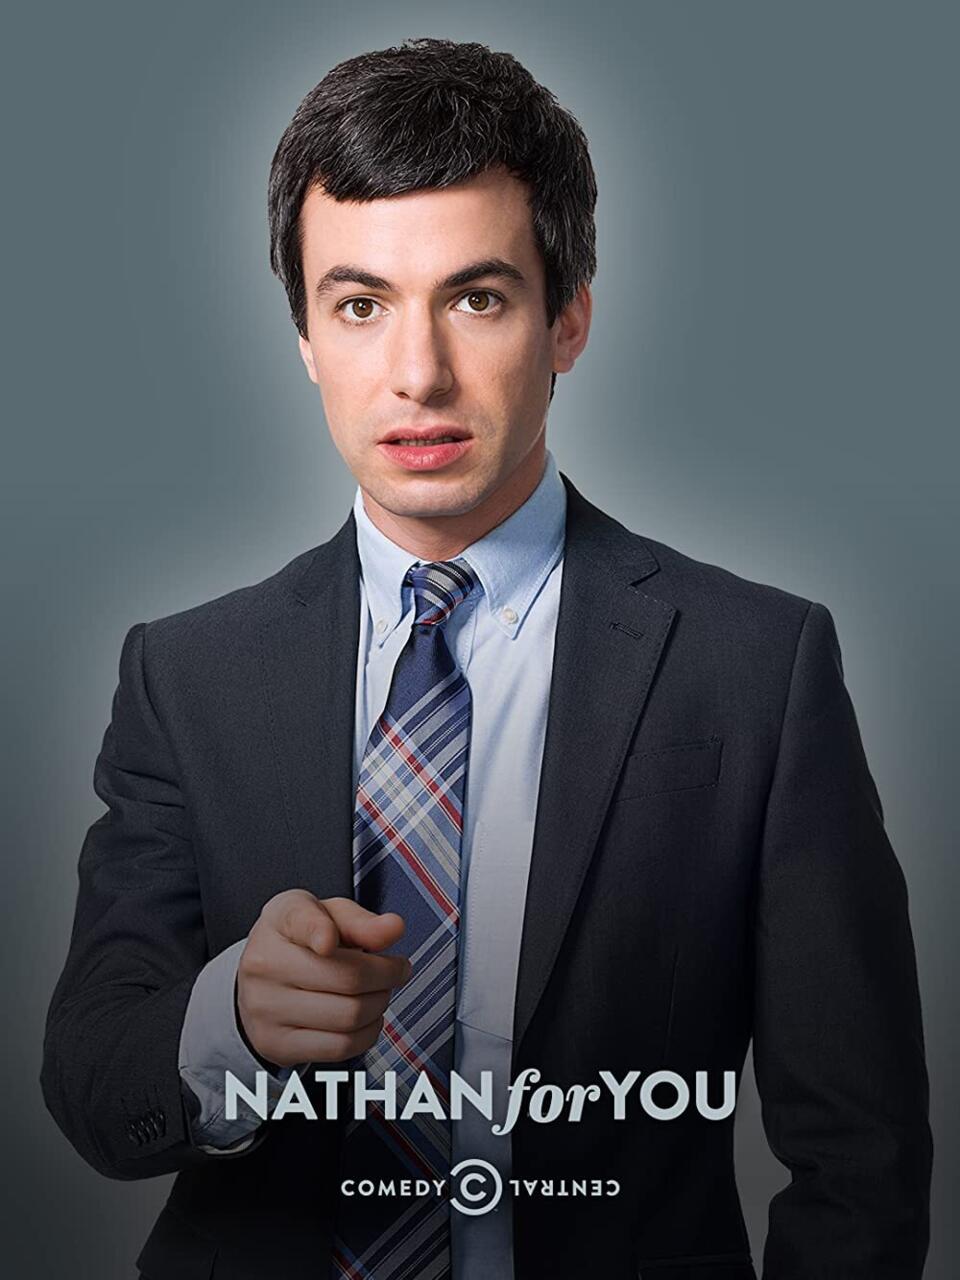 2. Nathan For You